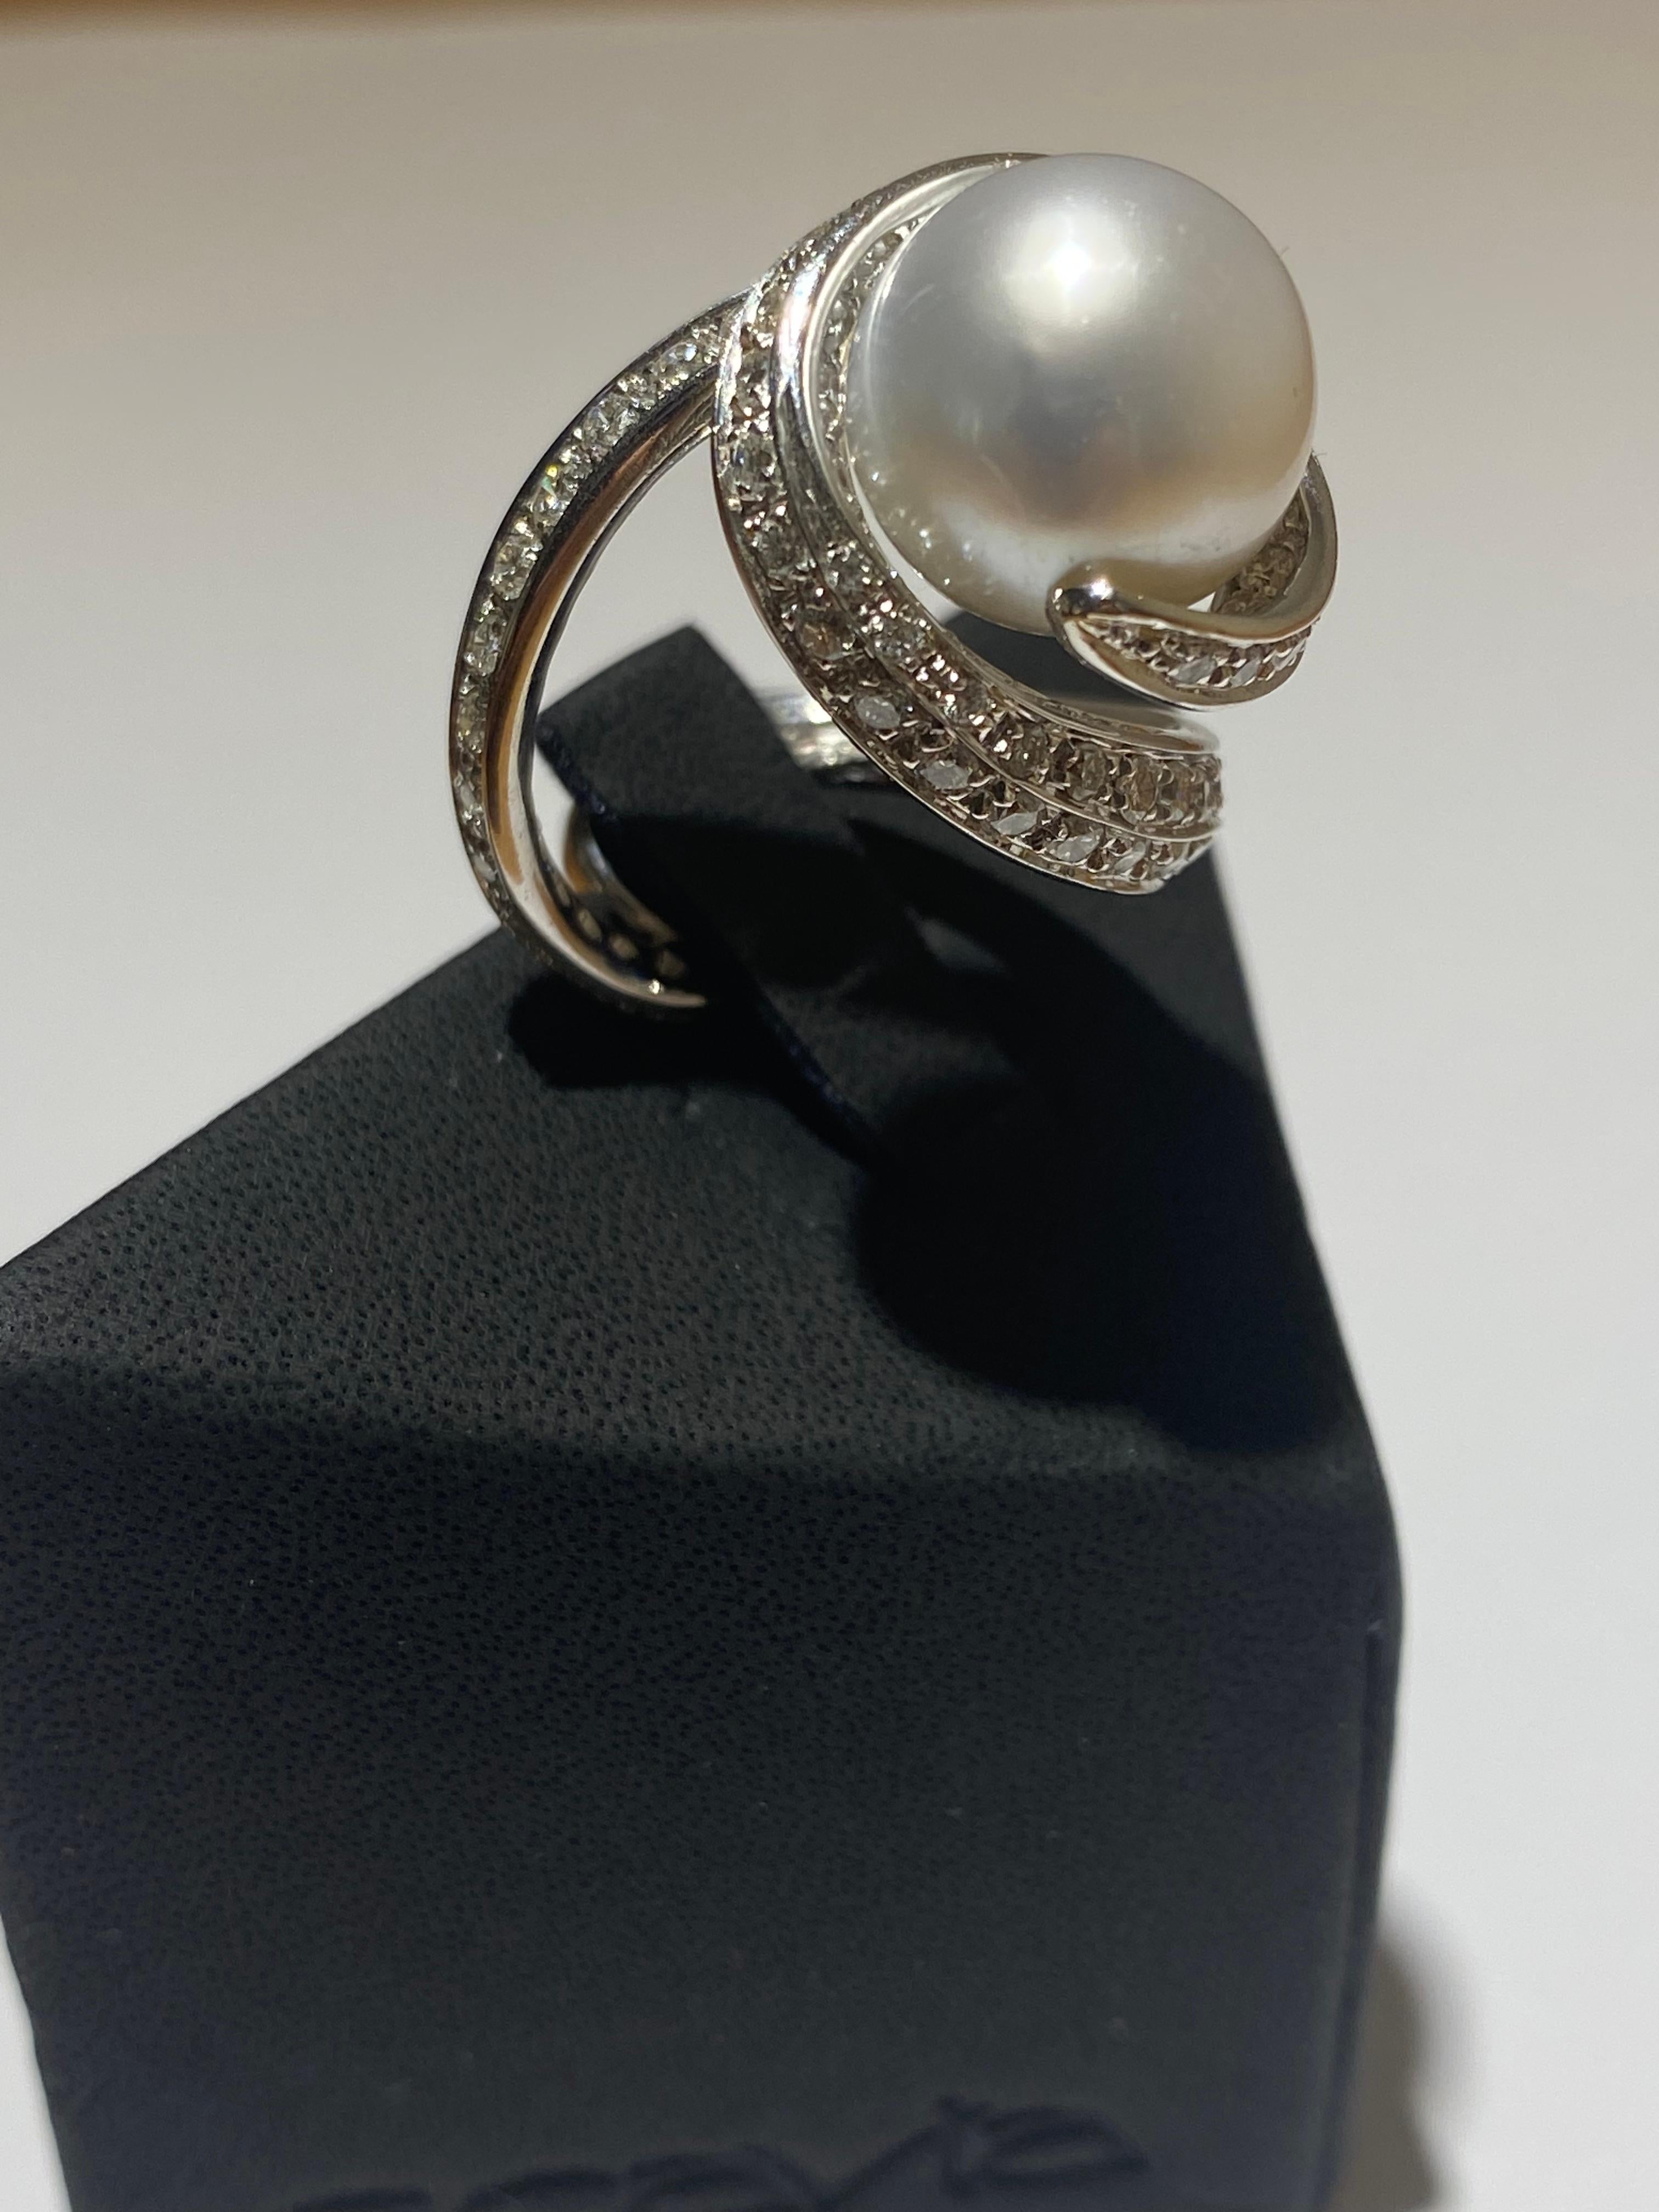 Brilliant Cut SCAVIA TWIST Ring 12.75 Ct Australian Silver/White Pearl Diamond Pavè White Gold For Sale